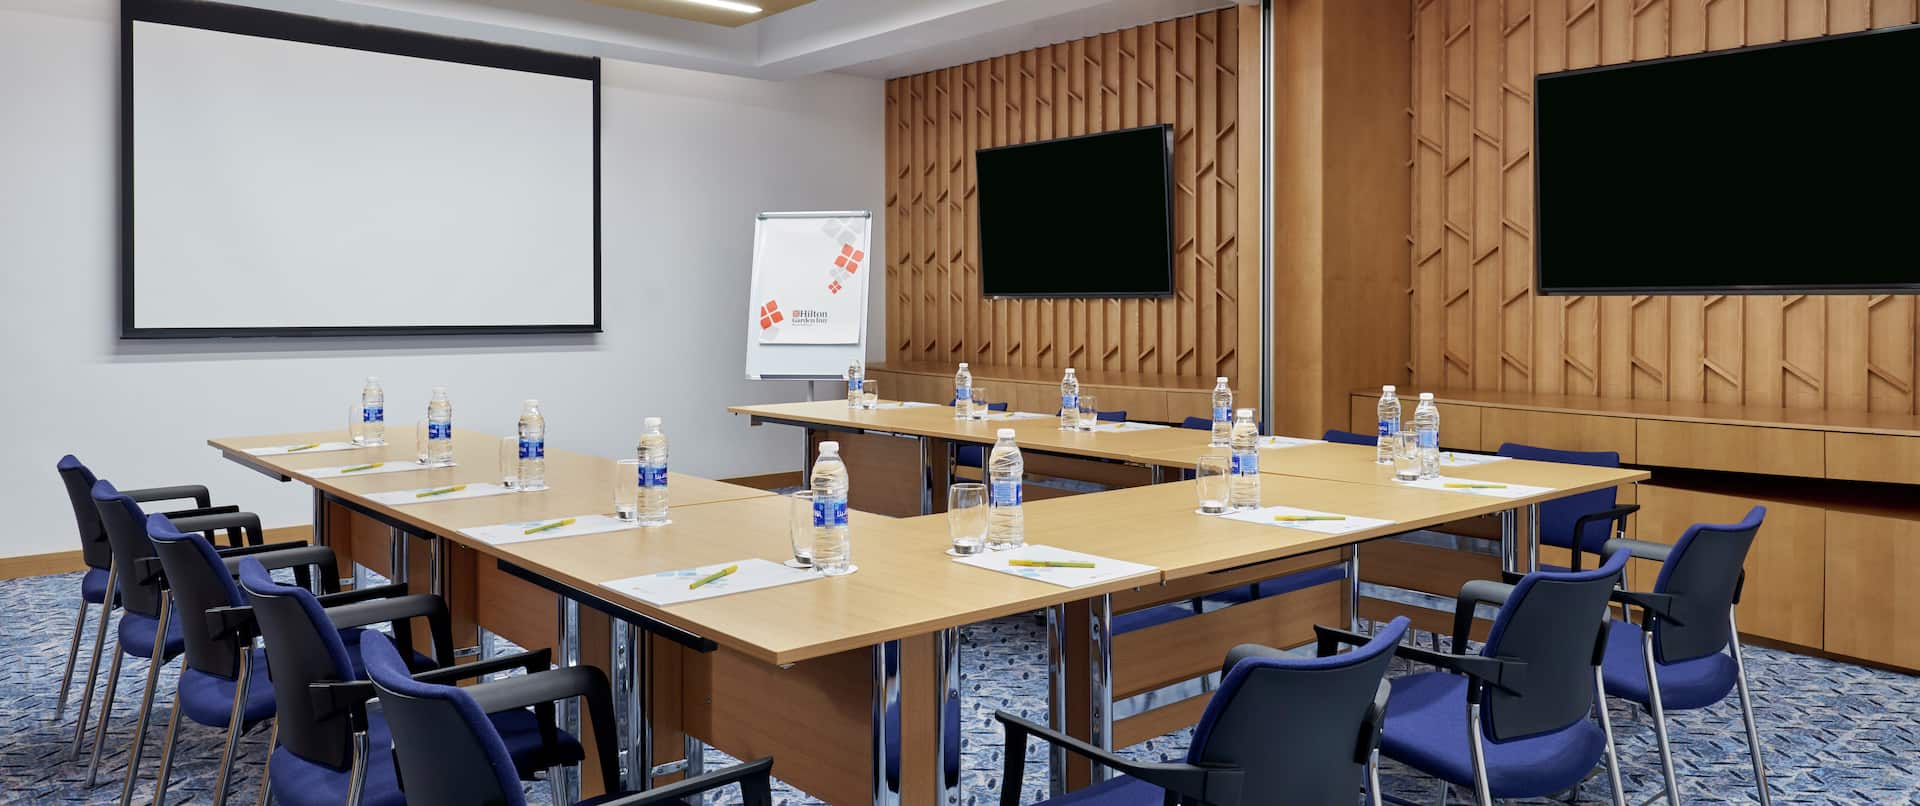 Meeting Room With U-Shape Set Up